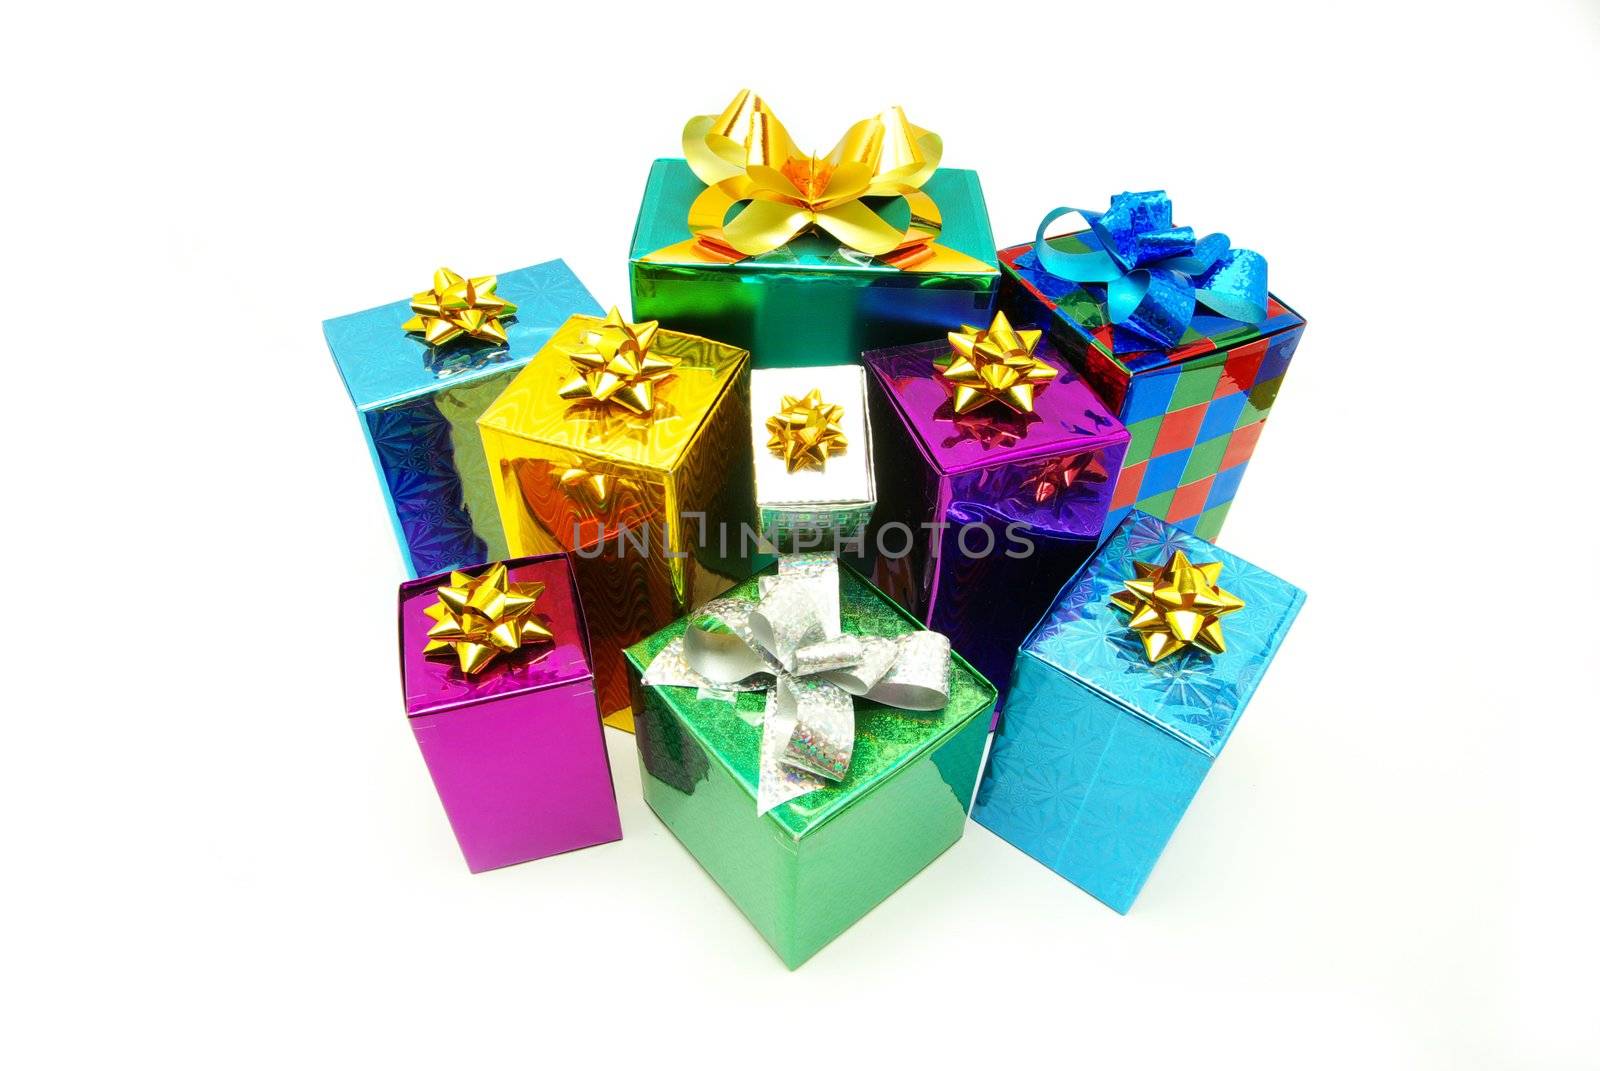  gifts  by Pakhnyushchyy